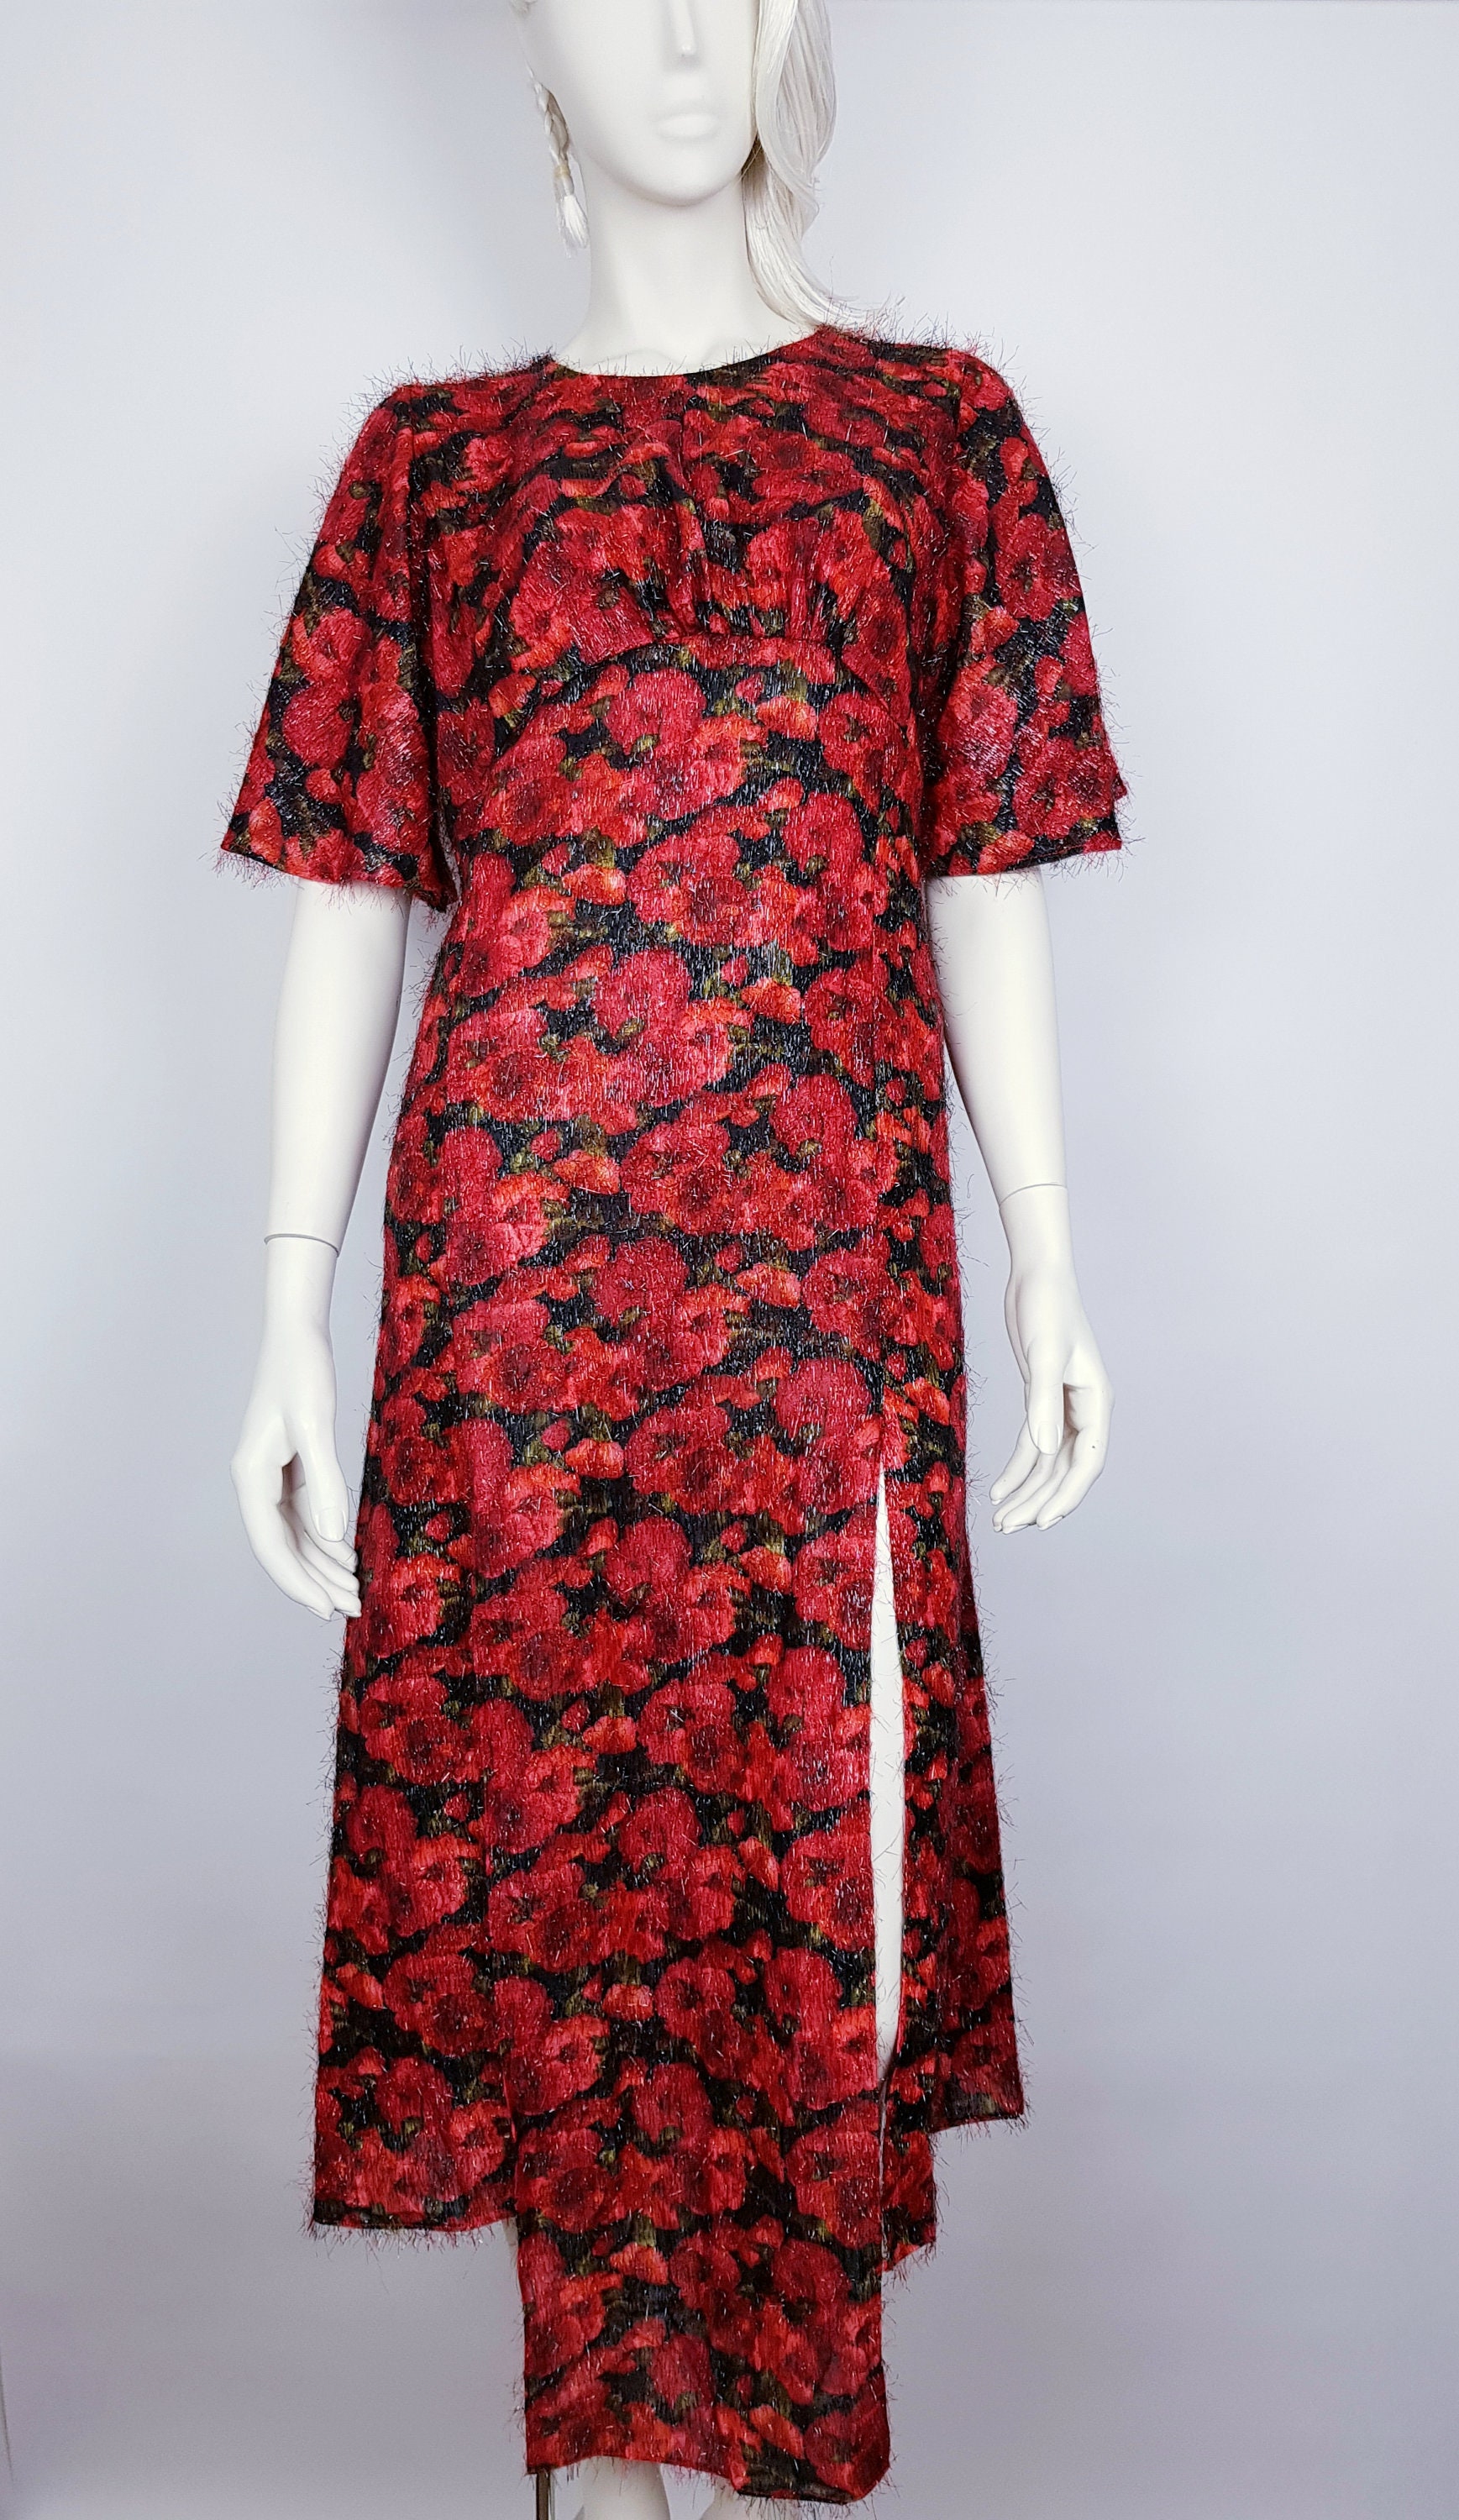 Beautiful Red Poppy Dress Size Medium Dress Size Medium 12 UK - Etsy UK